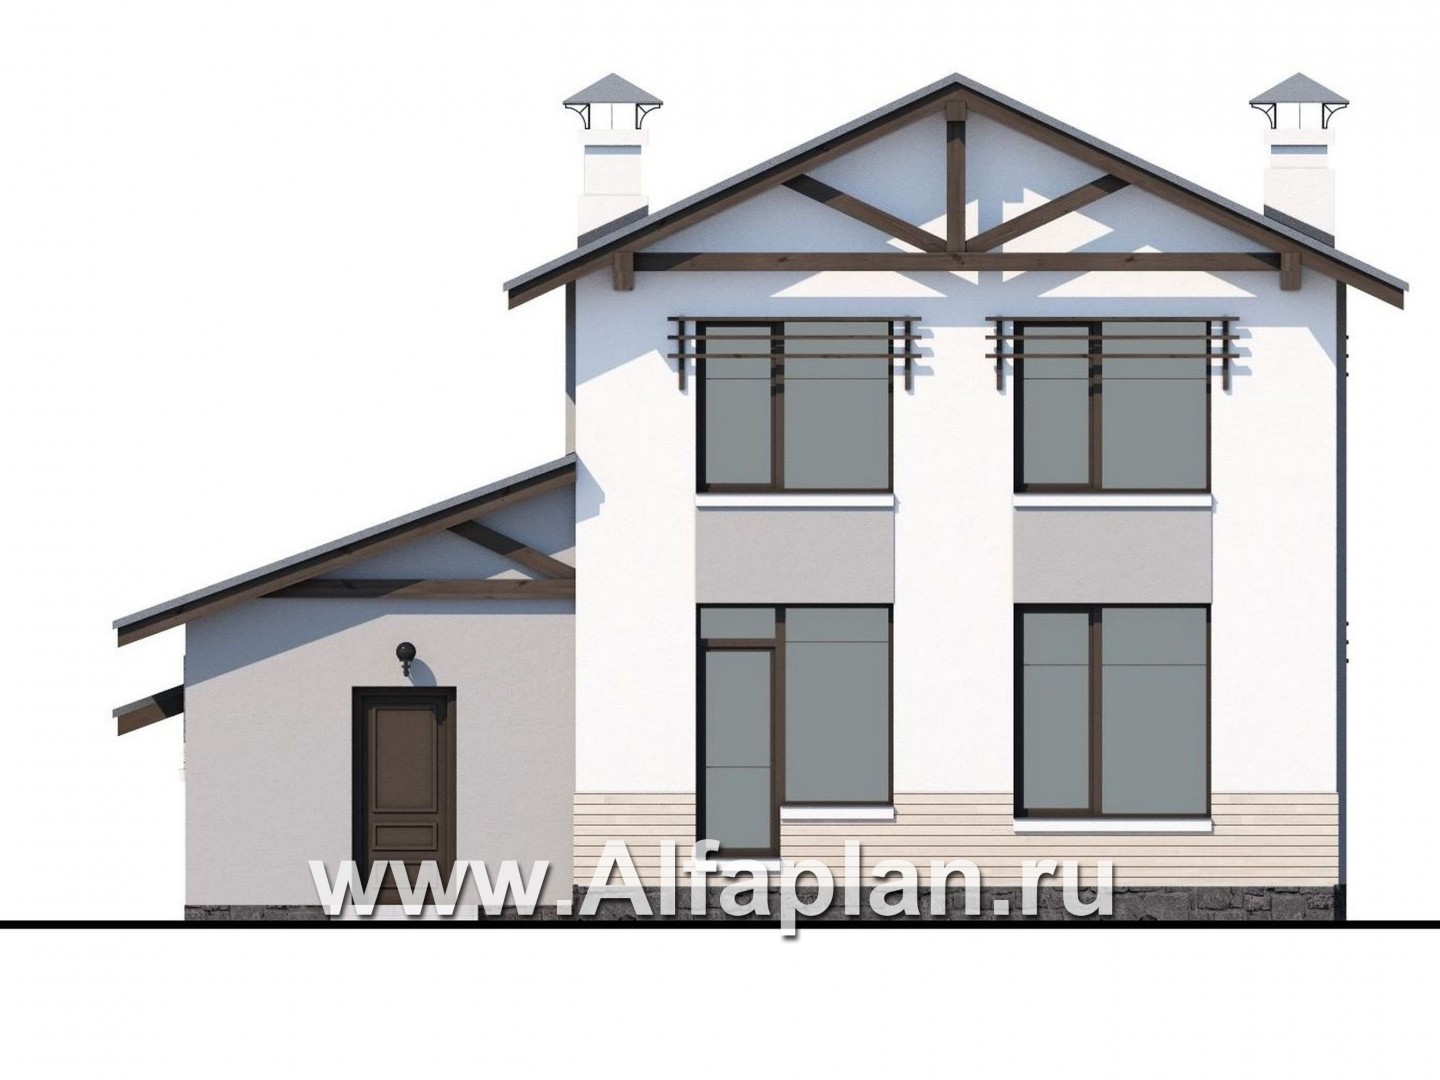 «Солнечный» - проект двухэтажного дома, с кабинетом на 1 эт, навес на 1 авто, в современном стиле - фасад дома